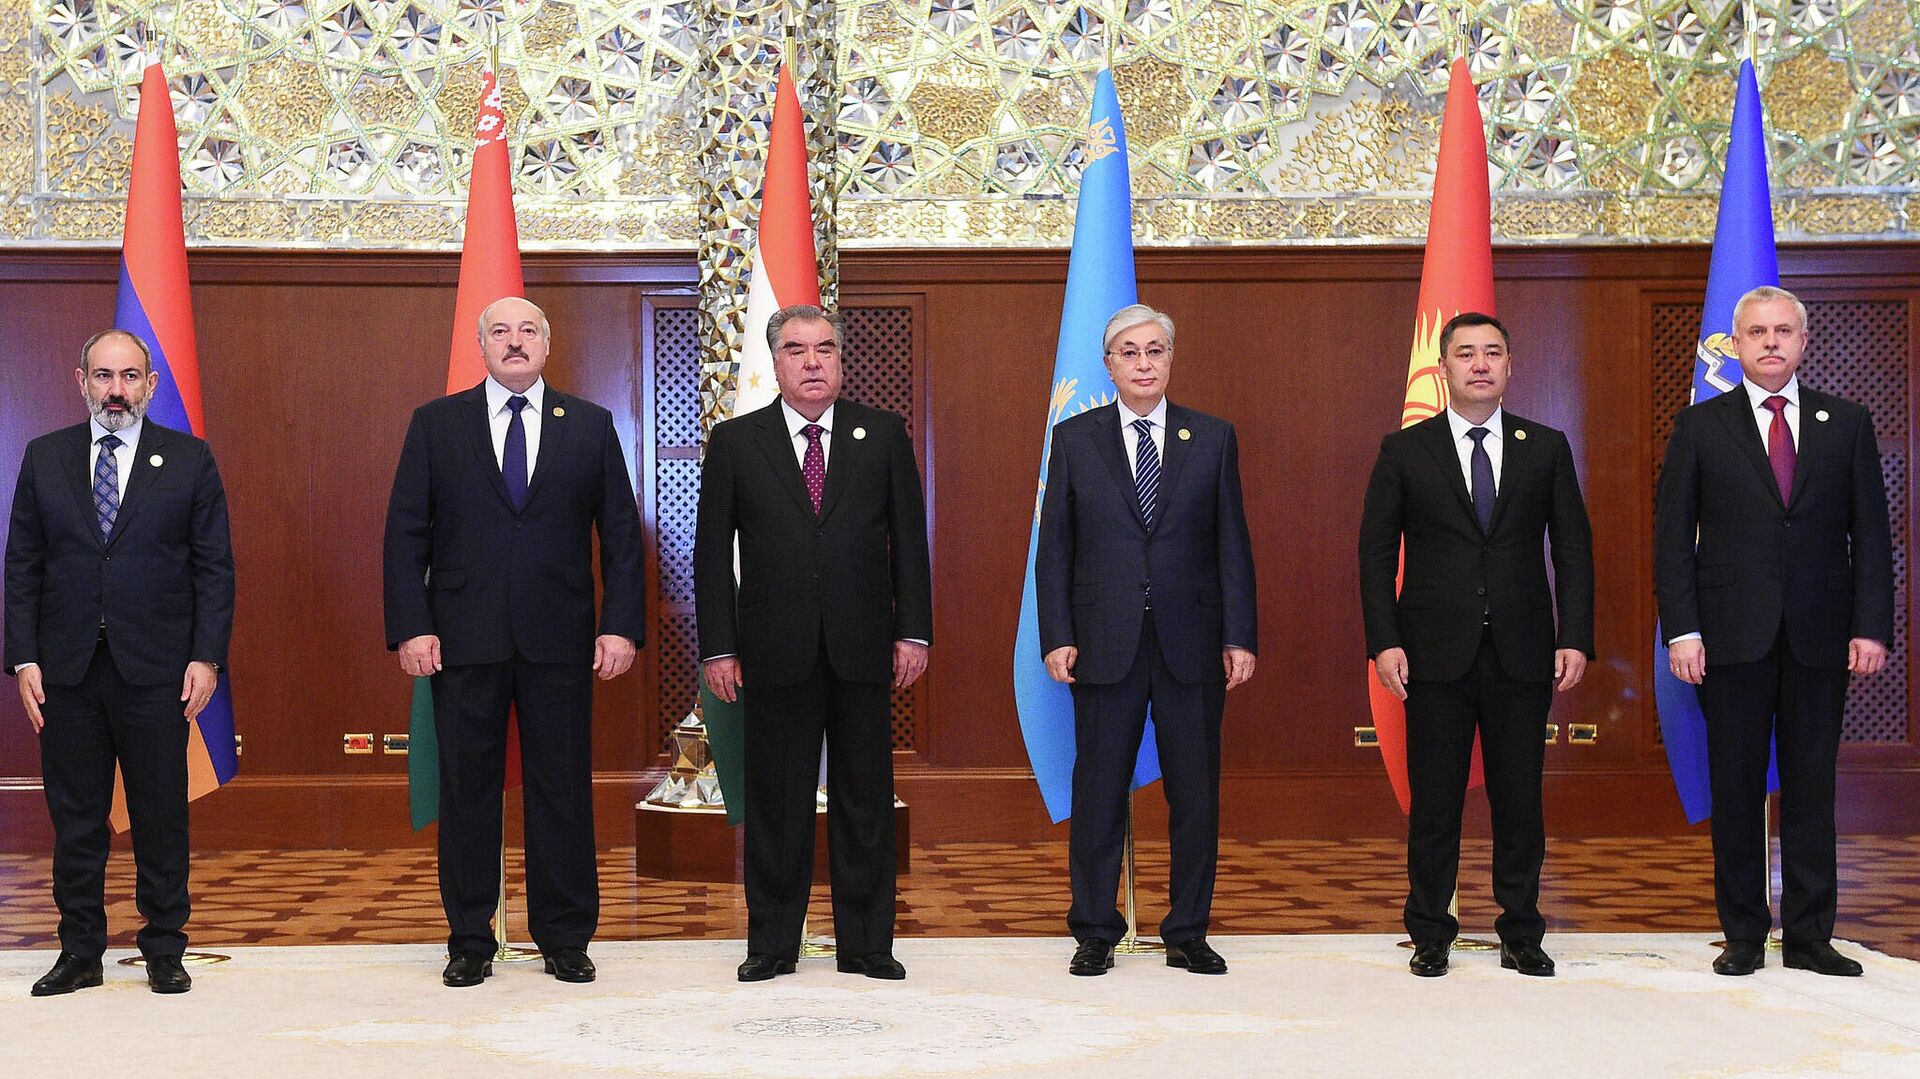 Страны участники заседание Совета коллективной безопасности ОДКБ - Sputnik Таджикистан, 1920, 16.09.2021